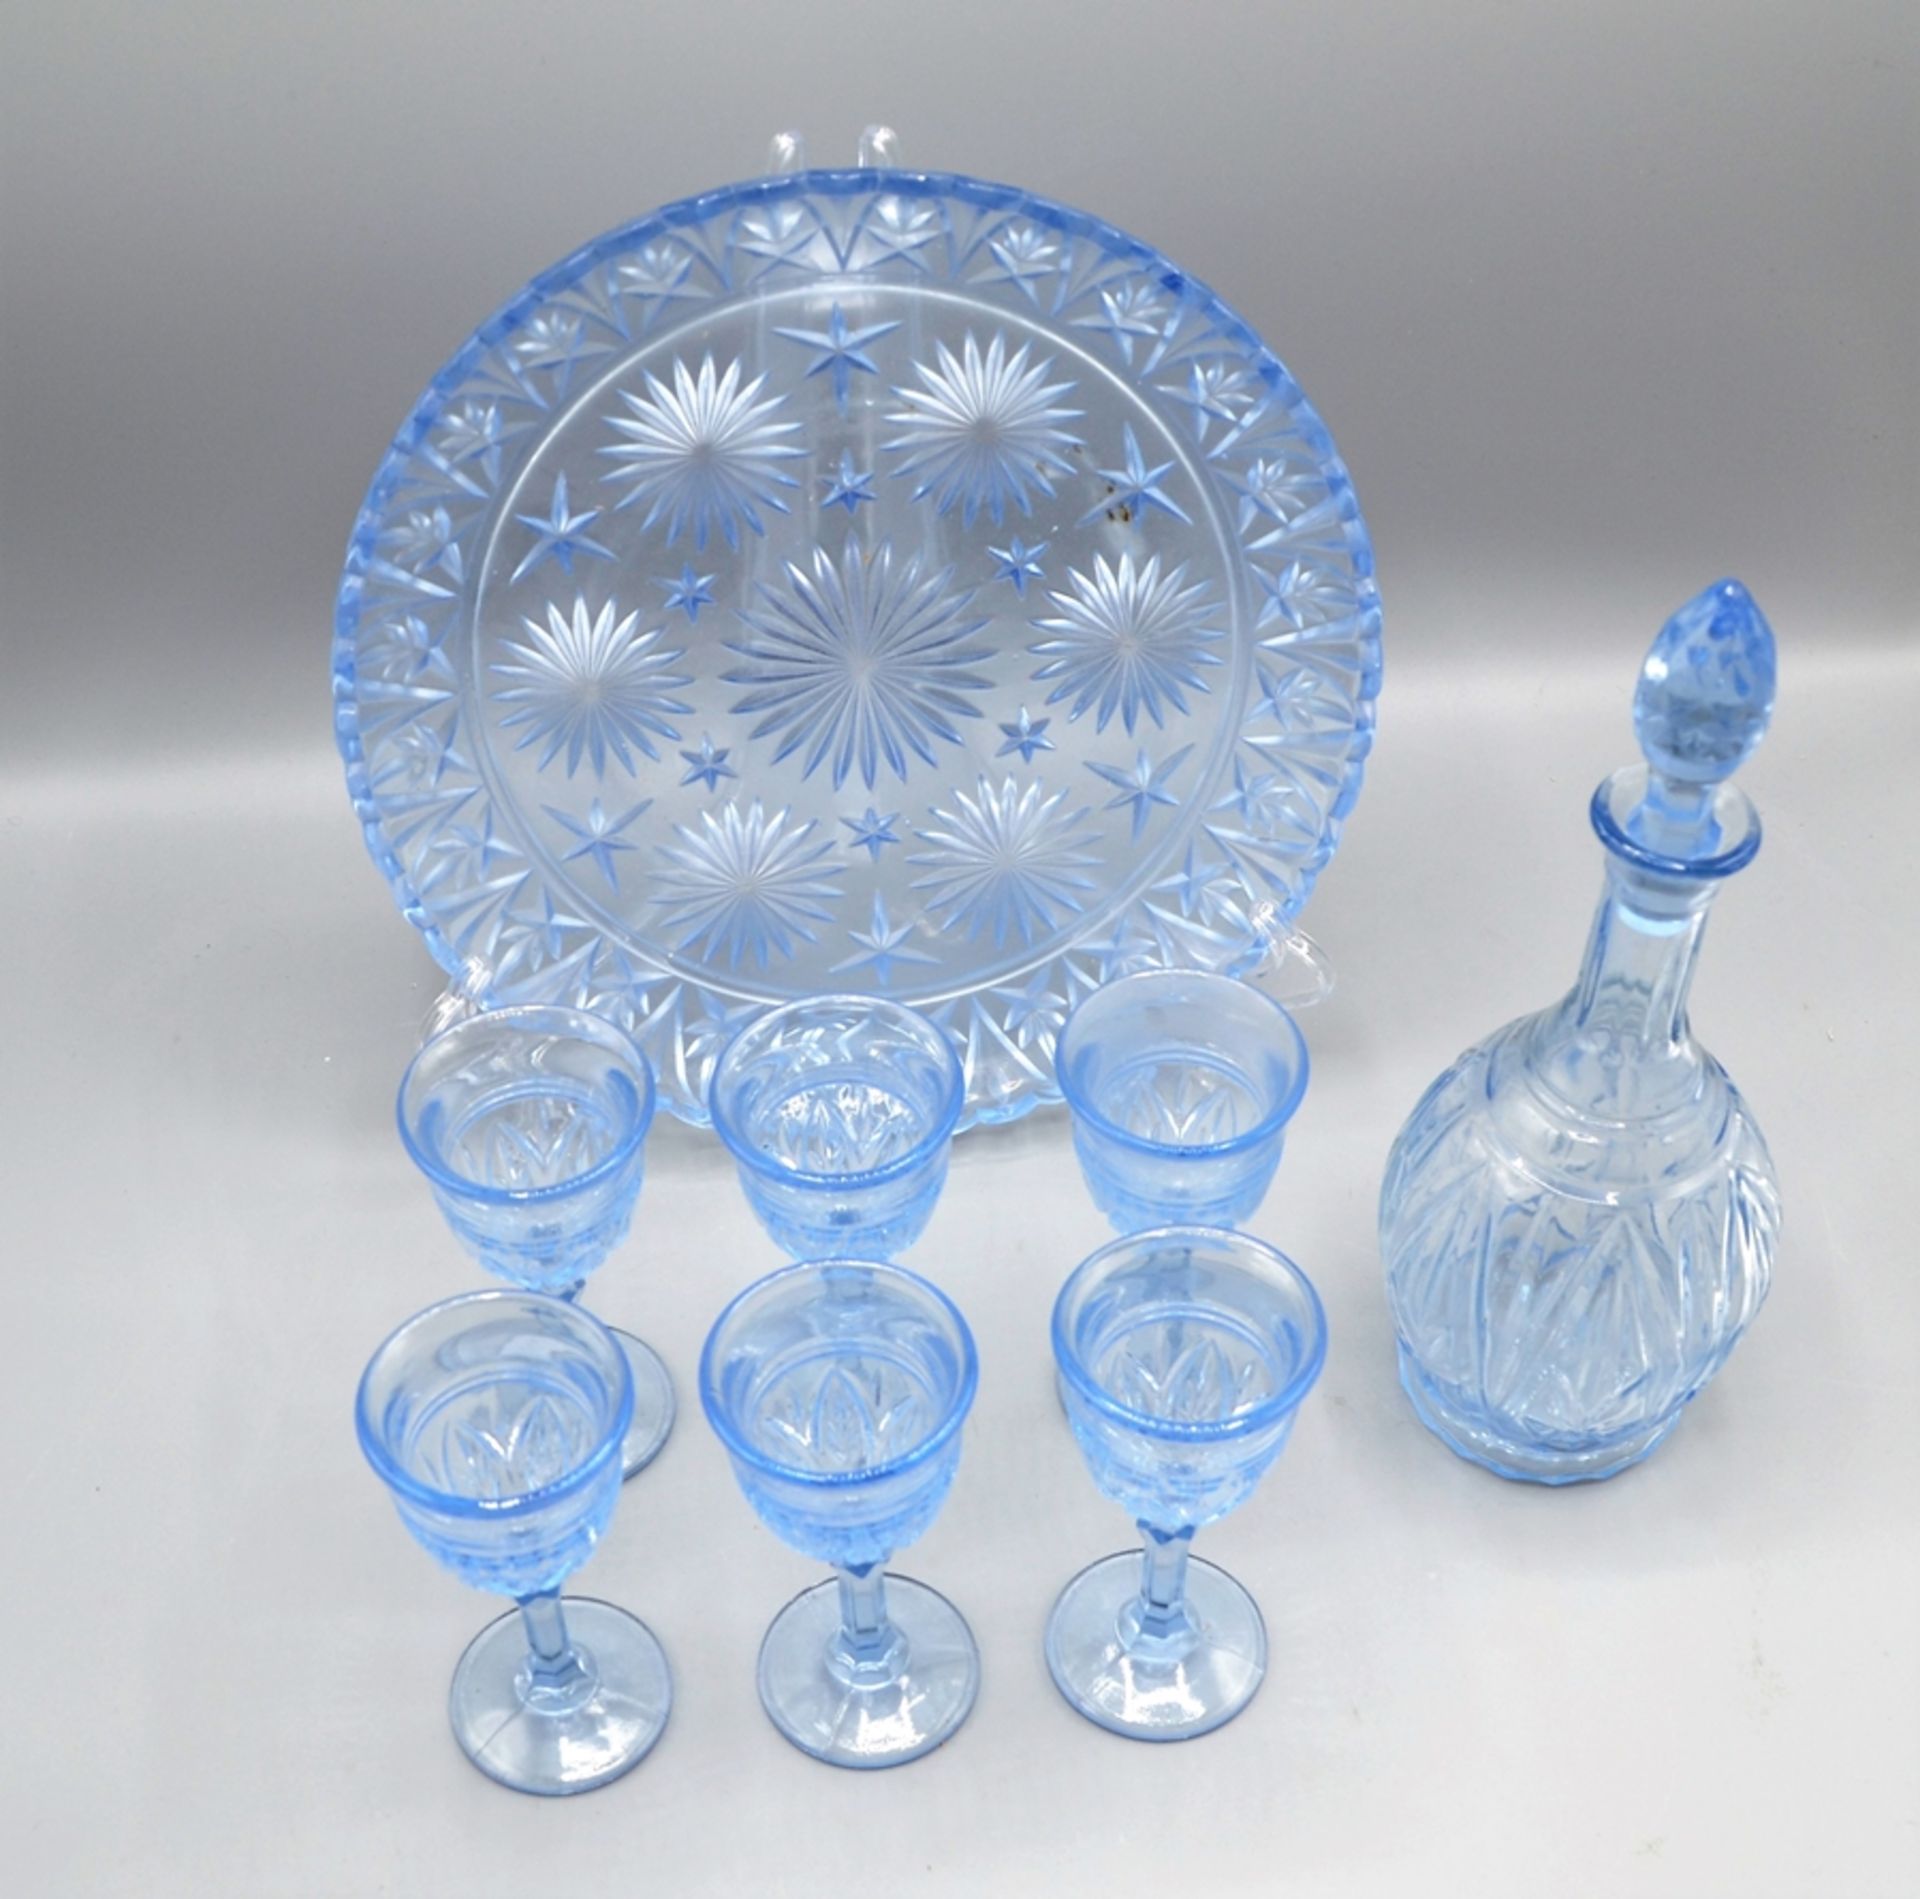 Schnaps Likör Set blaues Glas, Karaffe, 6 Gläser, Tablett - Image 2 of 2